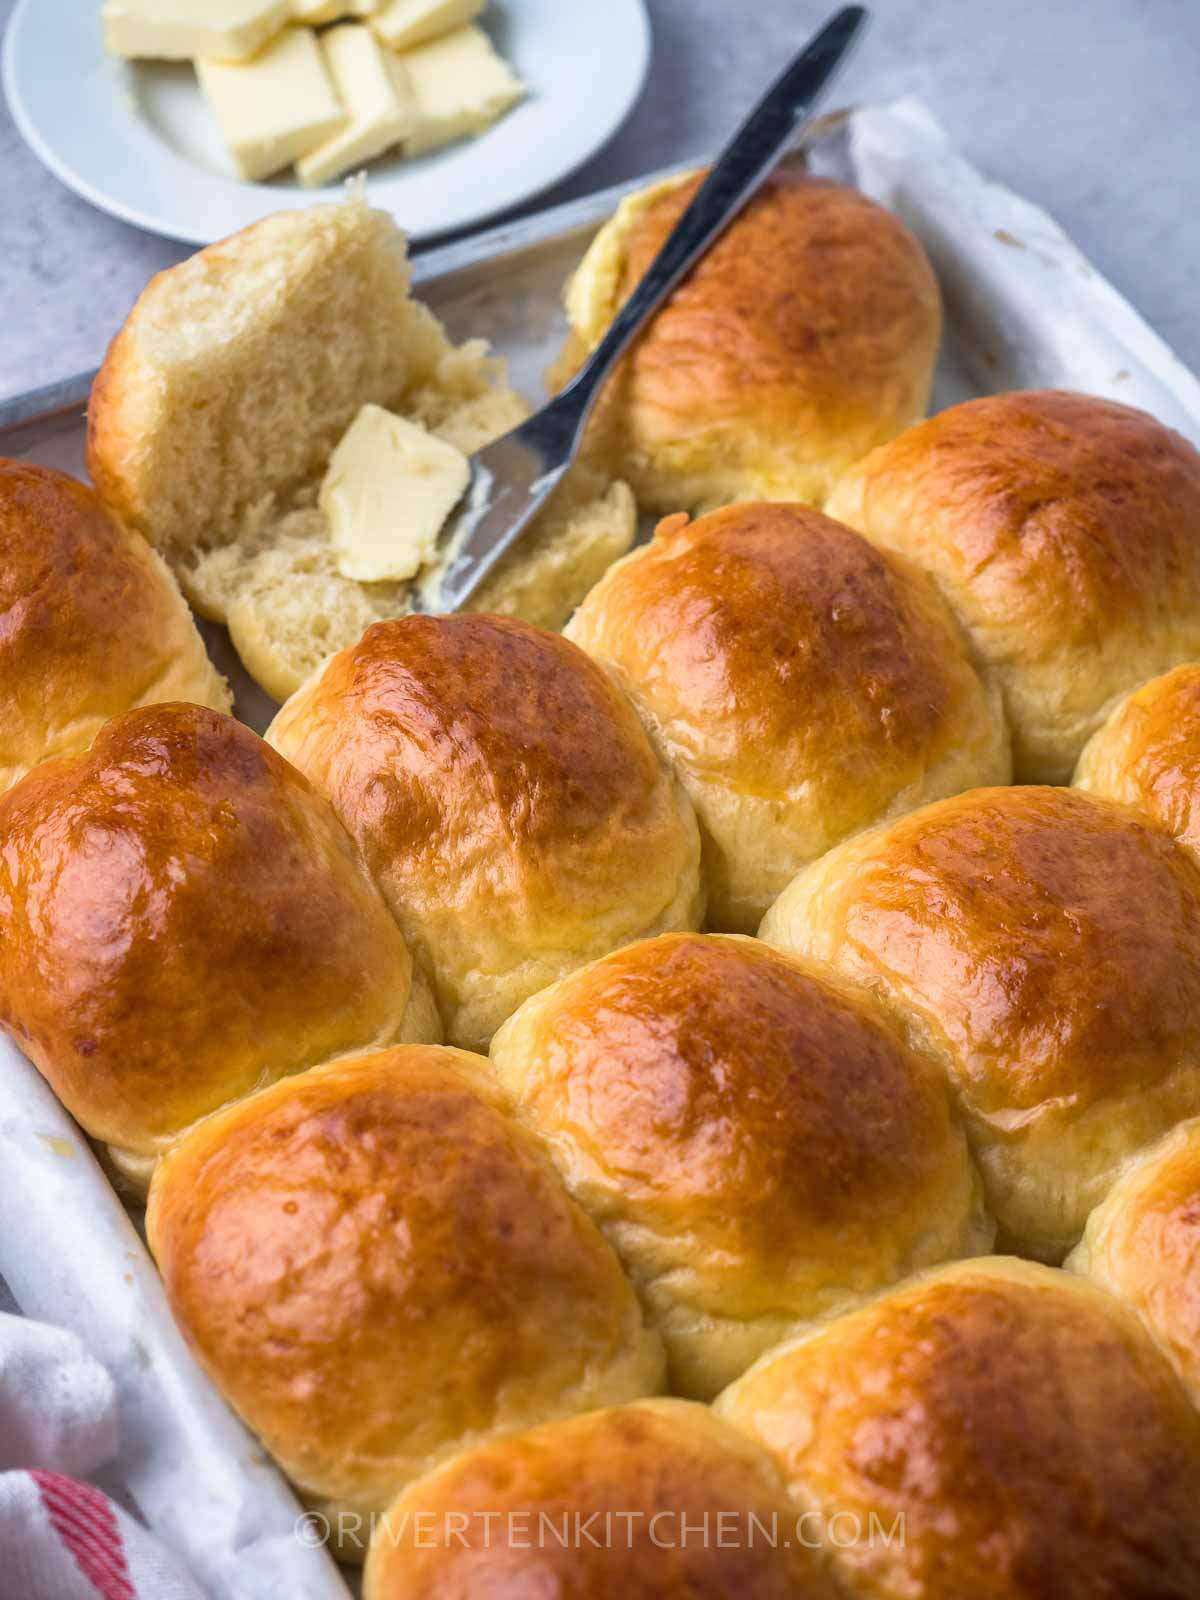 freshly baked sweet bread in a tray